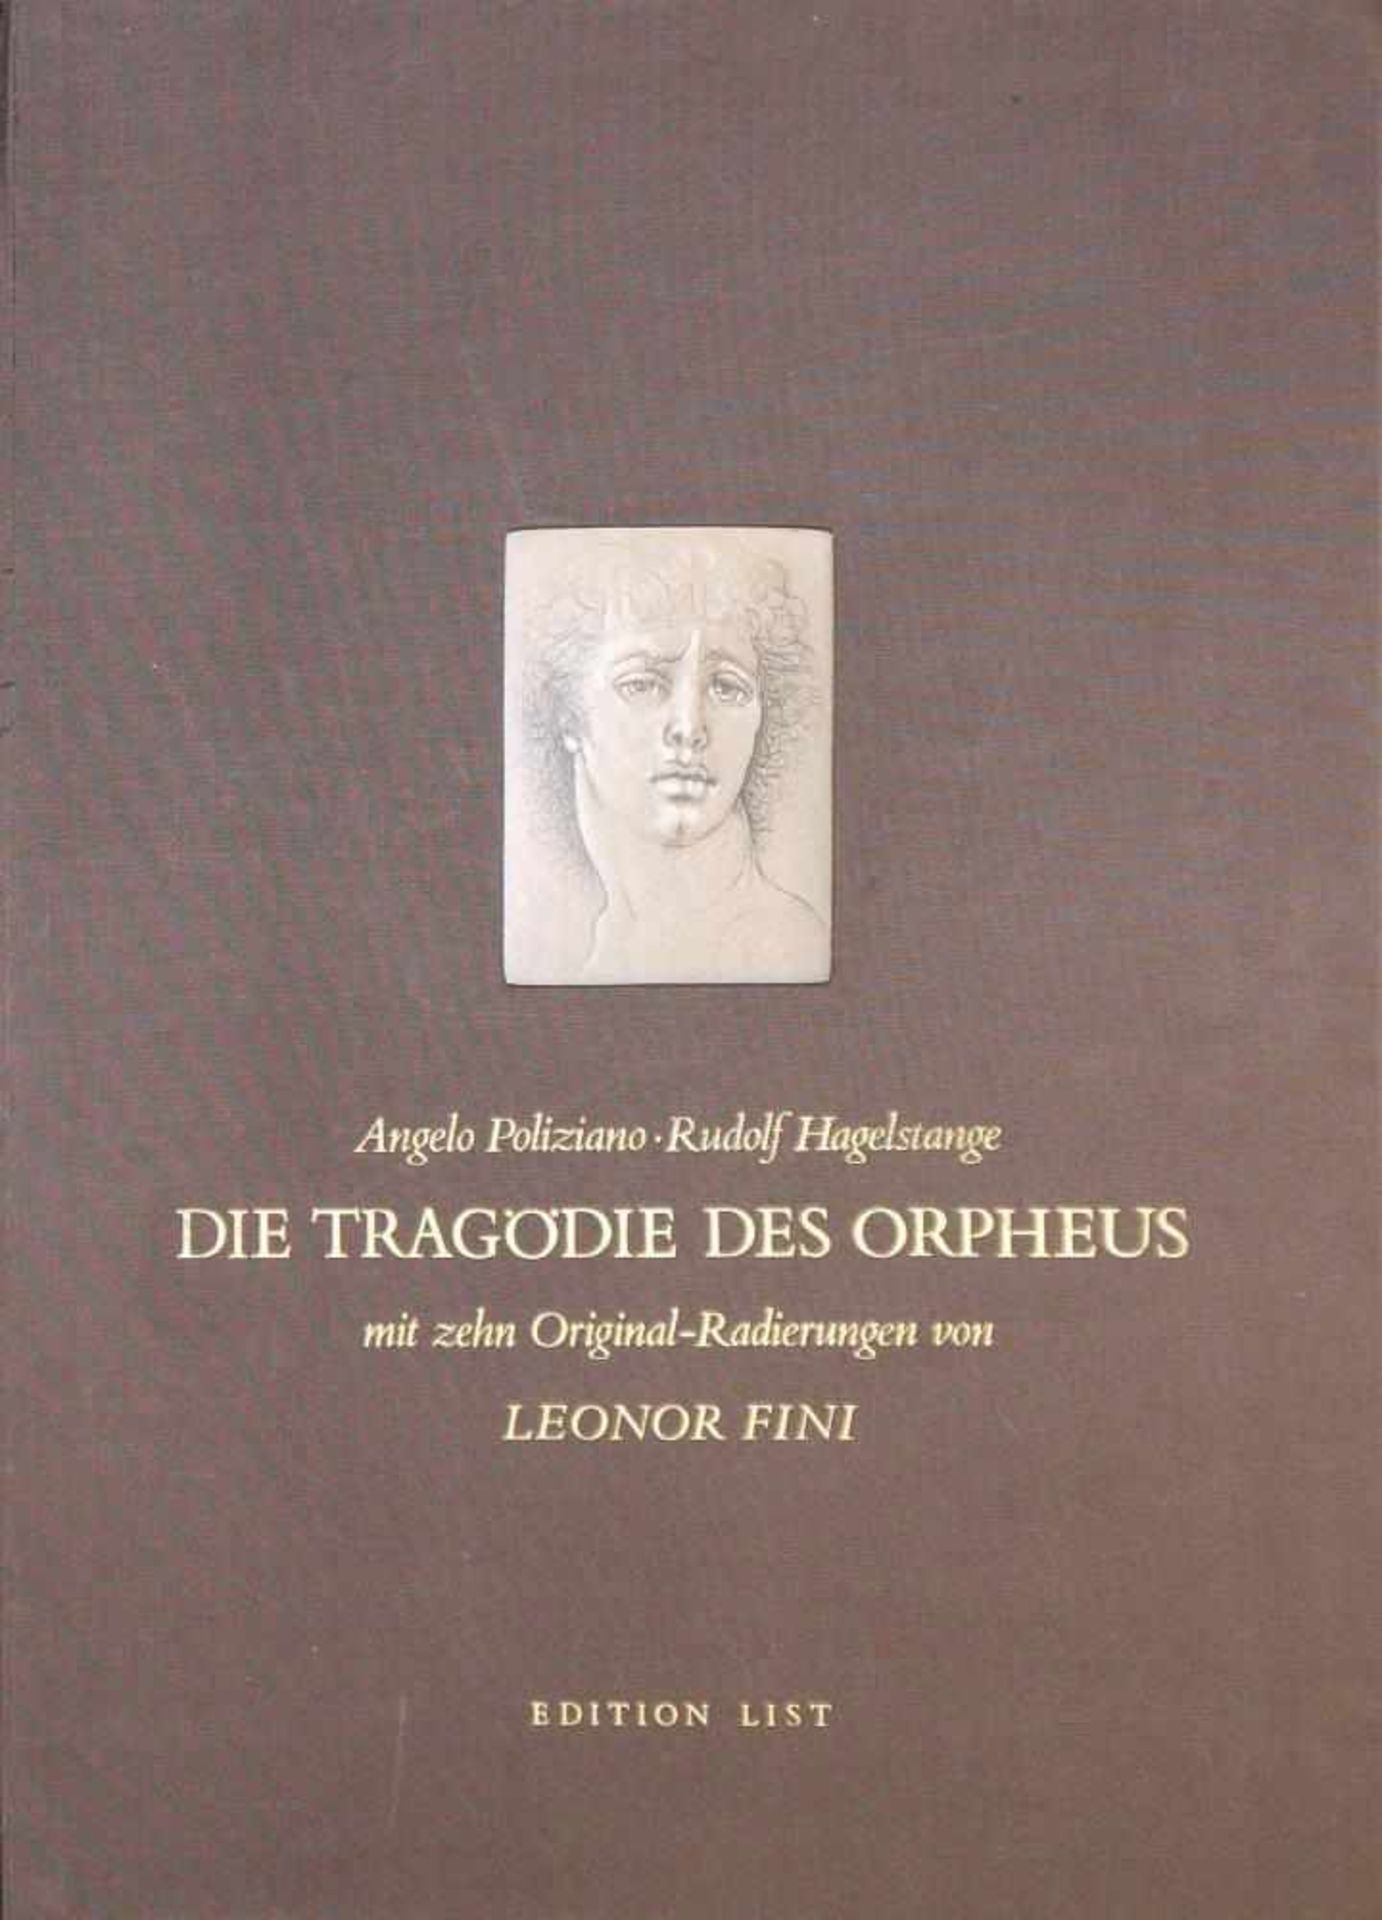 Leonor Fini, Mappe „Die Tragödie des Orpheus“ mit zehn Original-Radierungen, 1982 Leonor Fini,